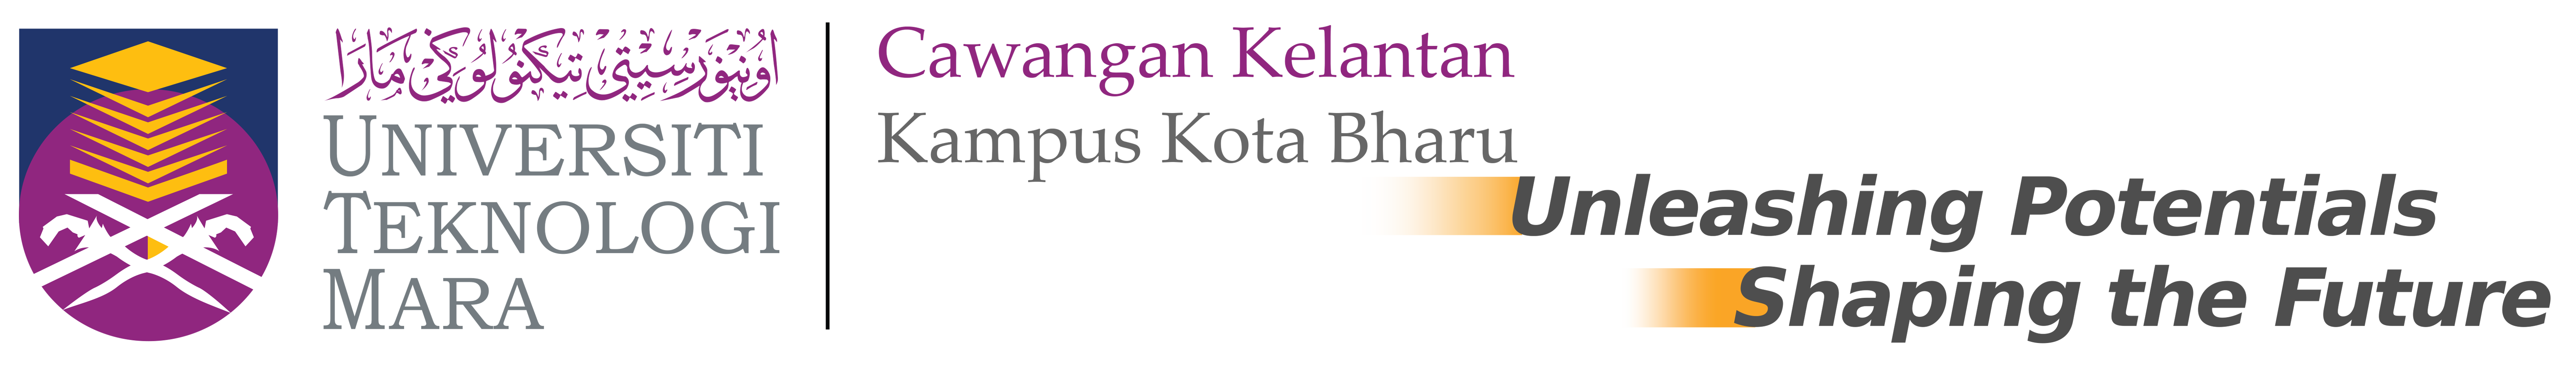 Universiti Teknologi MARA Cawangan Kelantan Kampus Kota Bharu